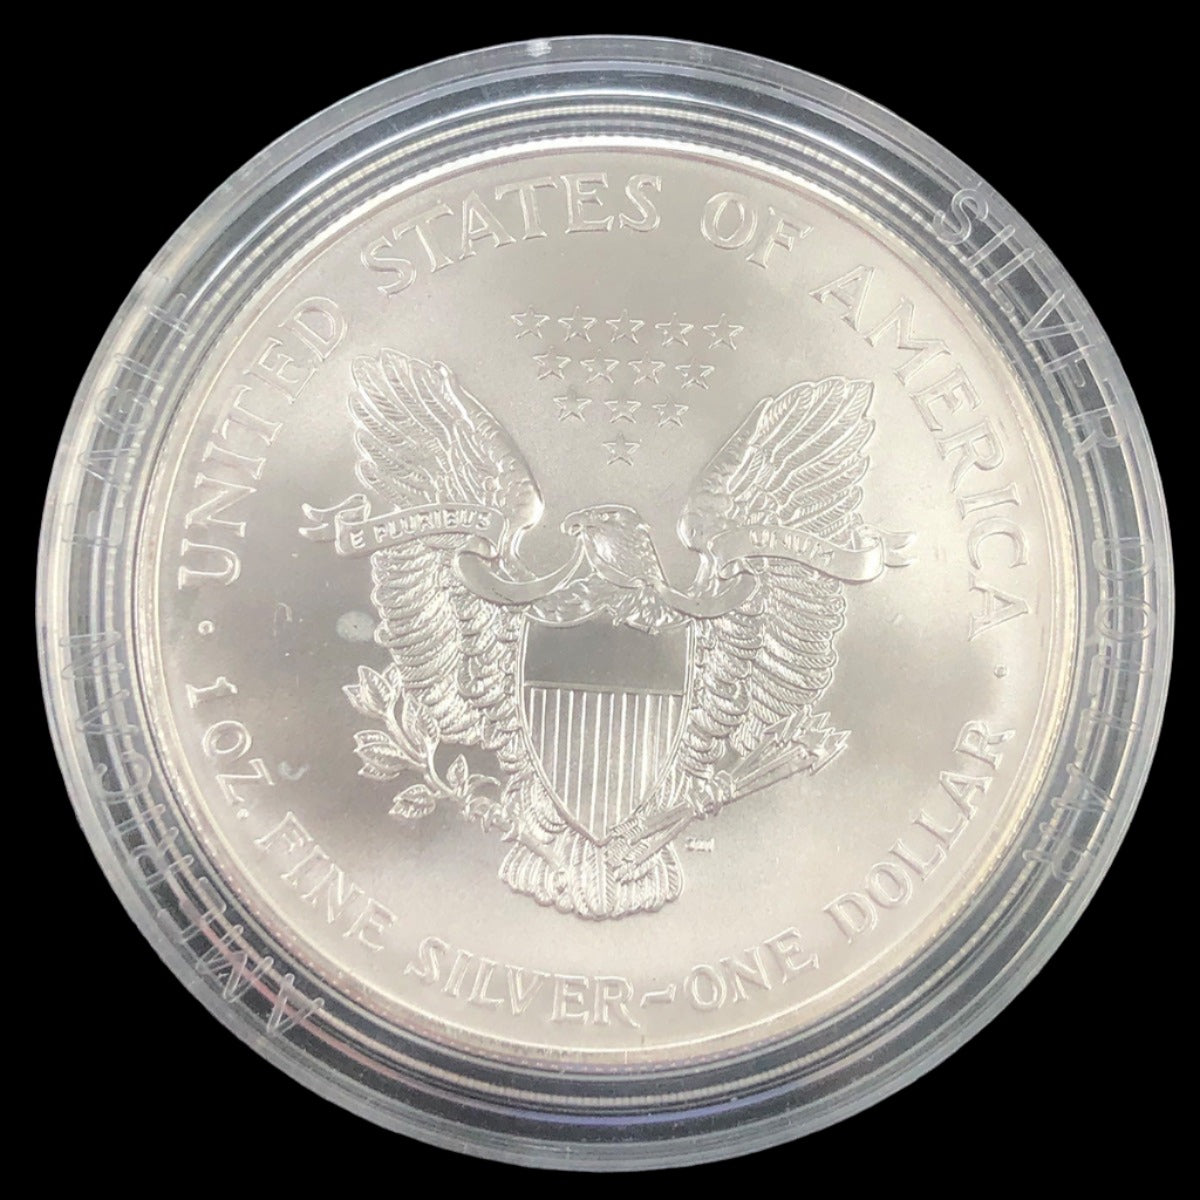 2000 1 oz Colorized American Silver Eagle